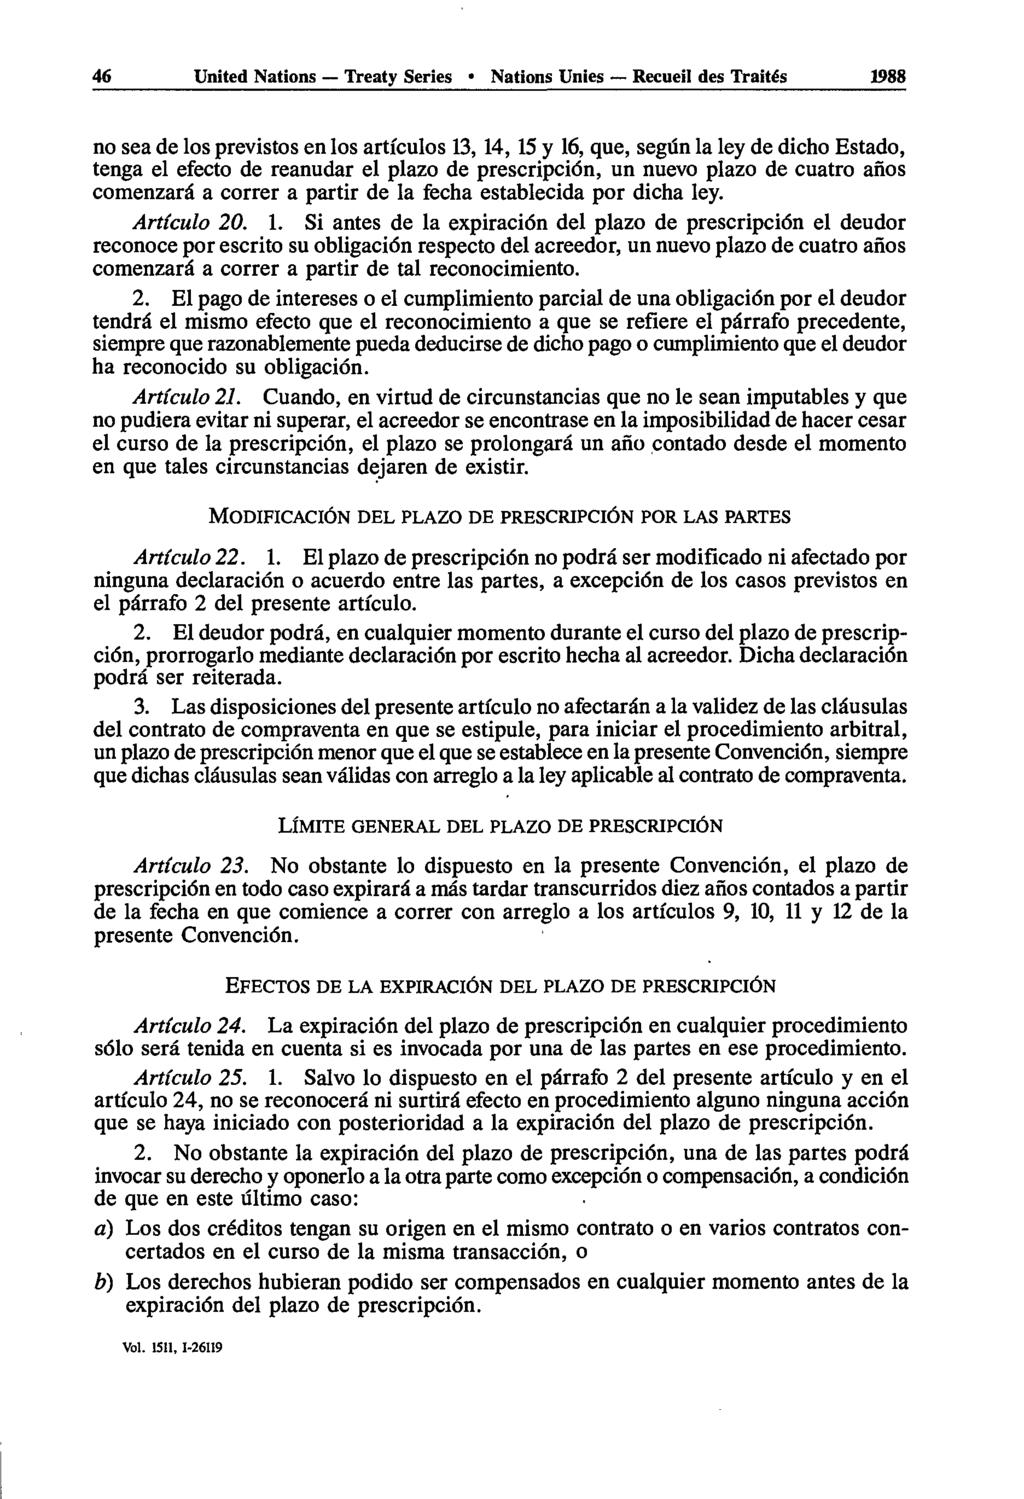 46 United Nations Treaty Series Nations Unies Recueil des Traités 1988 no sea de los previstos en los articules 13, 14, 15 y 16, que, segûn la ley de dicho Estado, tenga el efecto de reanudar el